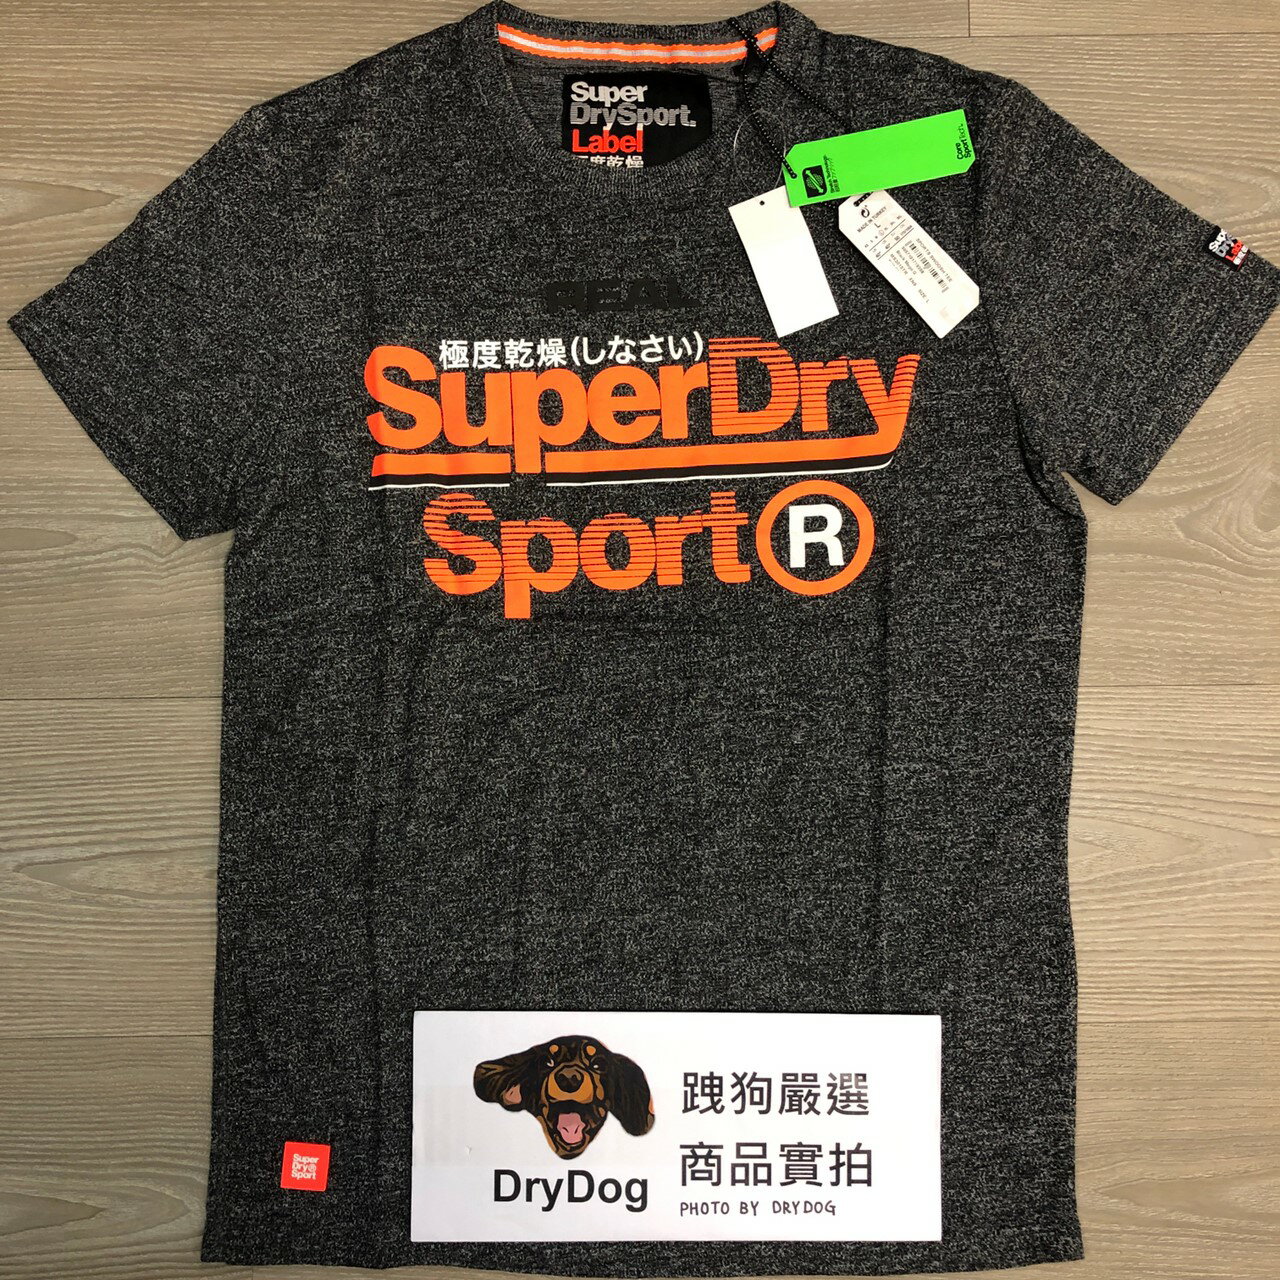 跩狗嚴選 極度乾燥 Superdry Sport 運動系列 T-Shirt 短袖 上衣 T恤 透氣 排汗 黑灰 0